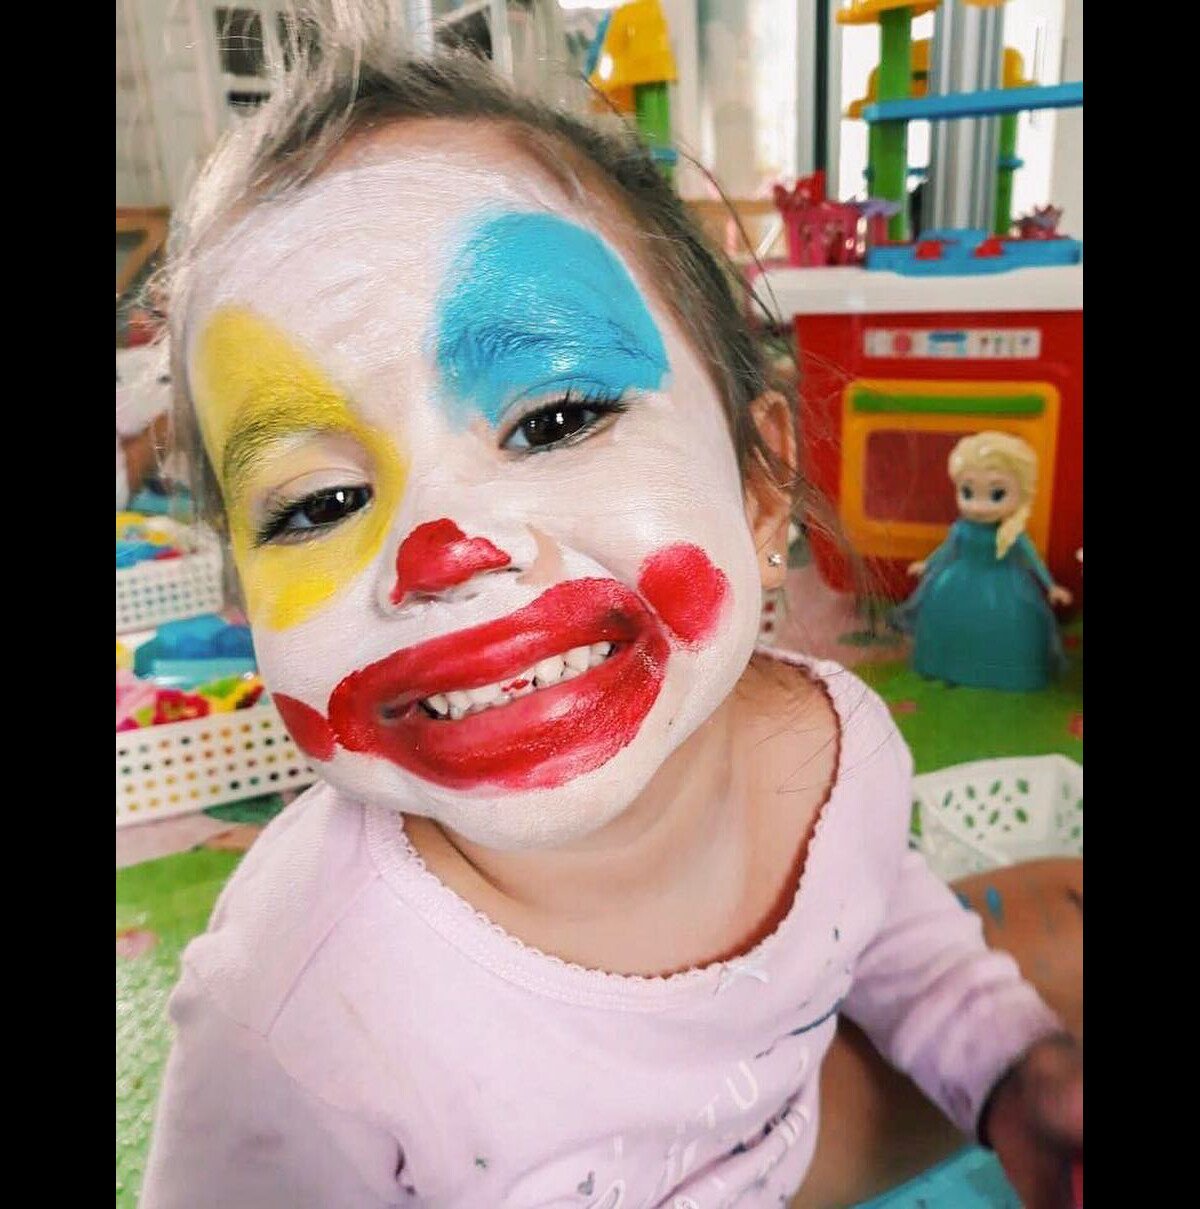 Uma menina com o rosto pintado com tinta preta e branca.